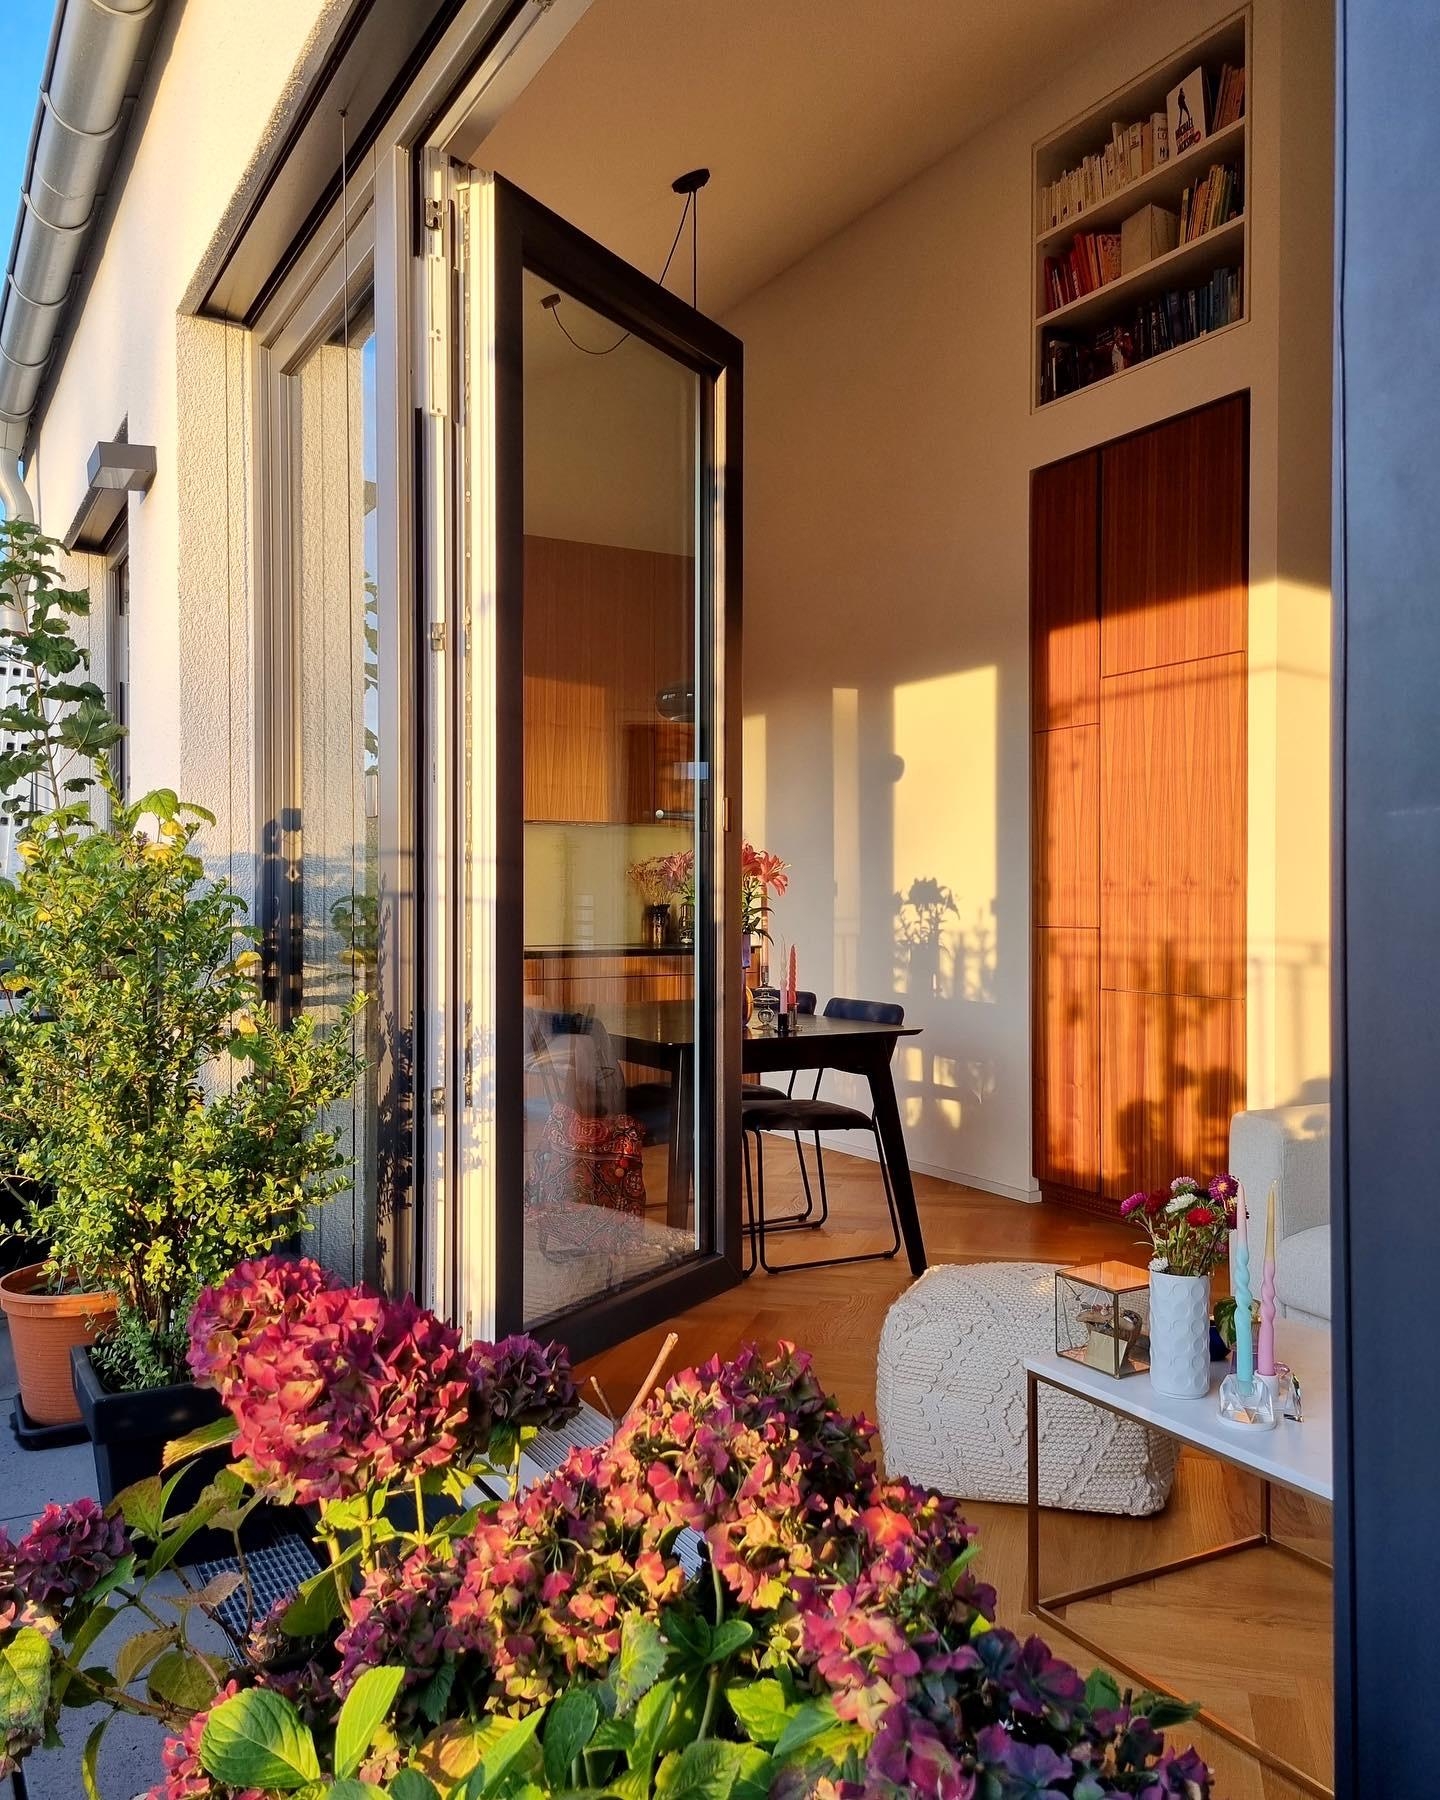 Das Licht ist schon toll im Herbst 🥹 #balkon #pflanzen